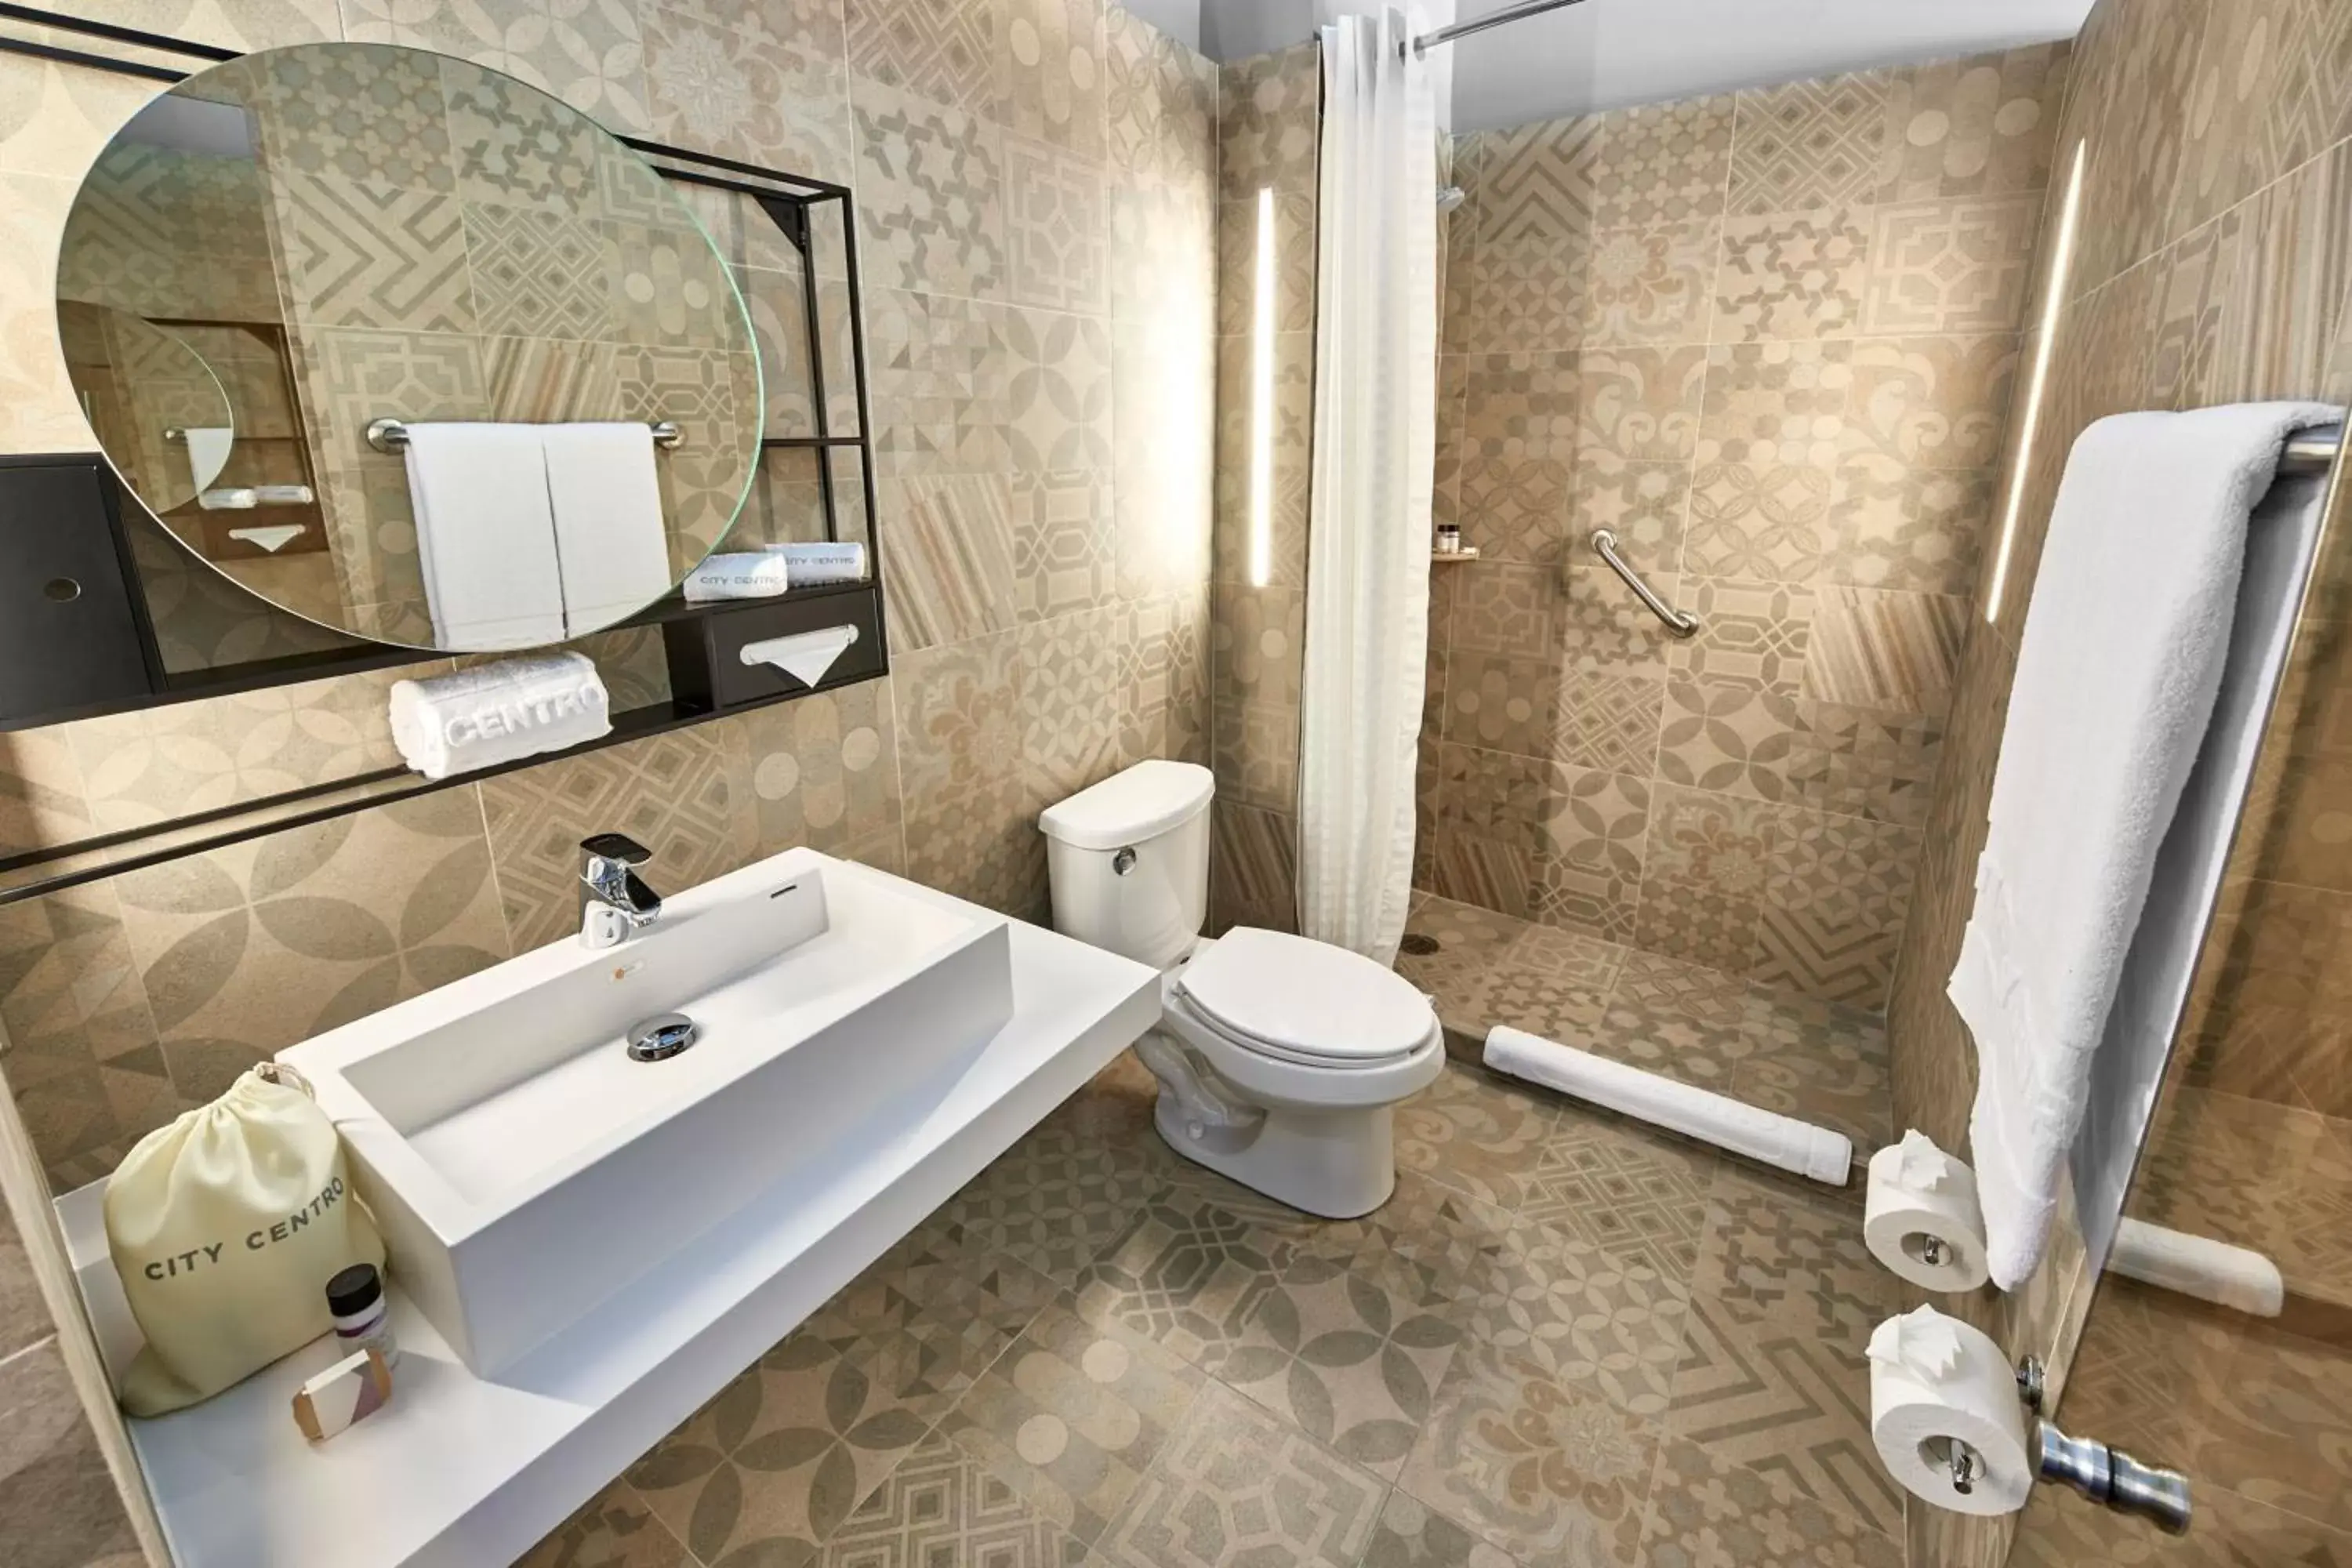 Photo of the whole room, Bathroom in City Centro by Marriott Ciudad de Mexico